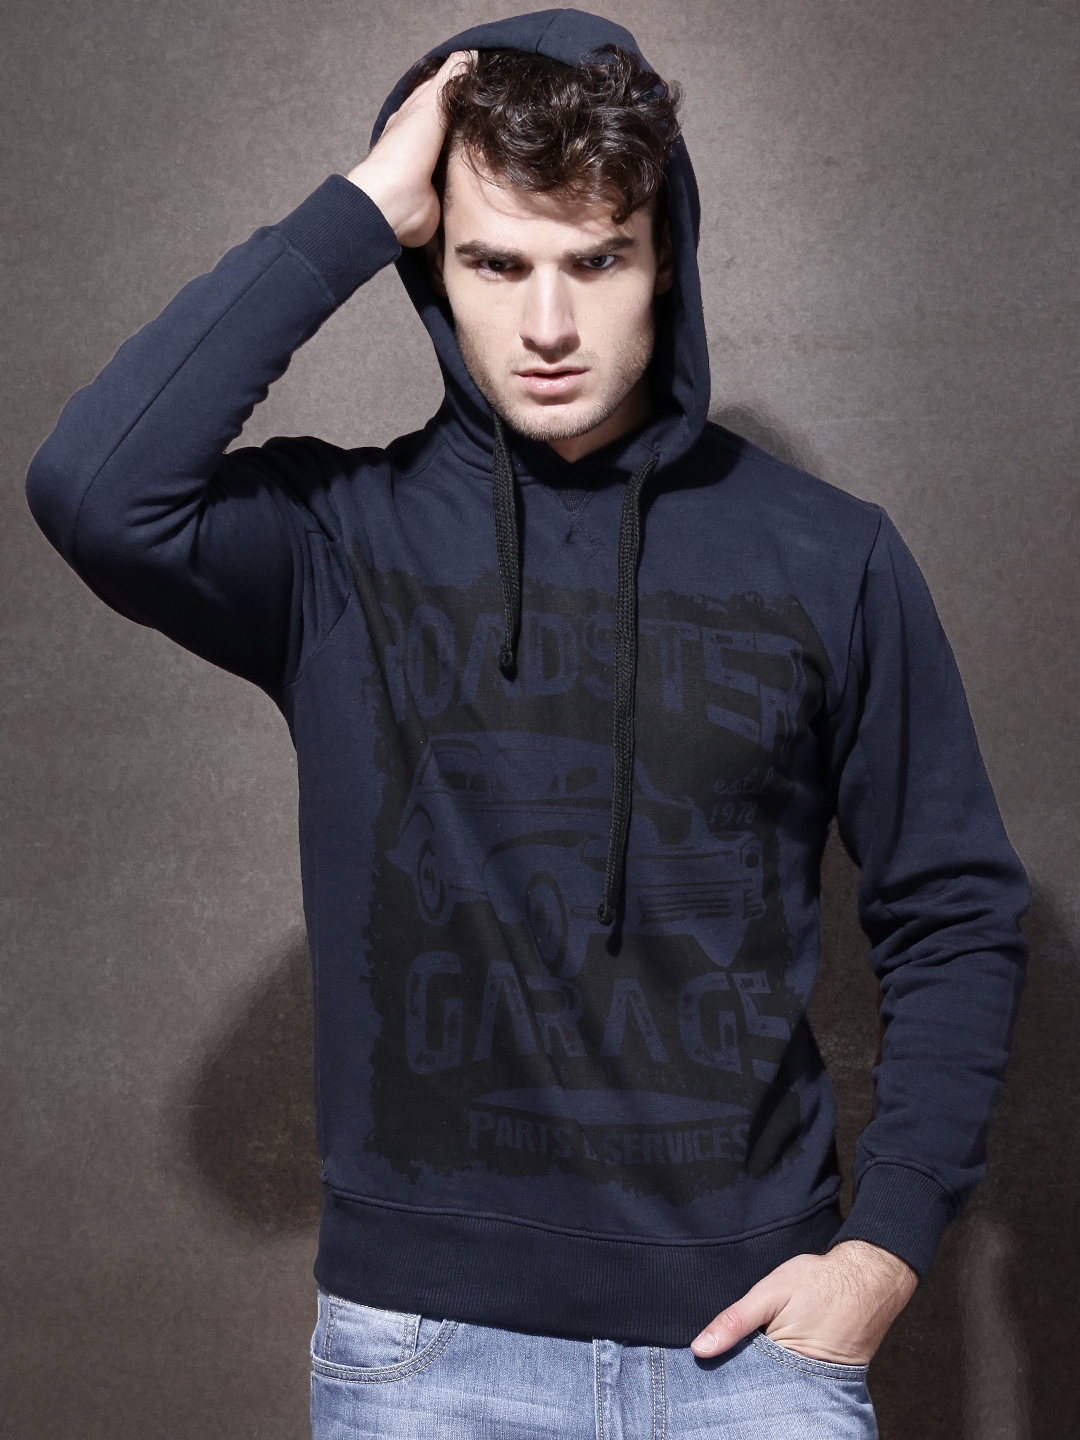 Buy Roadster Navy Printed Hooded Sweatshirt - Sweatshirts for Men ...